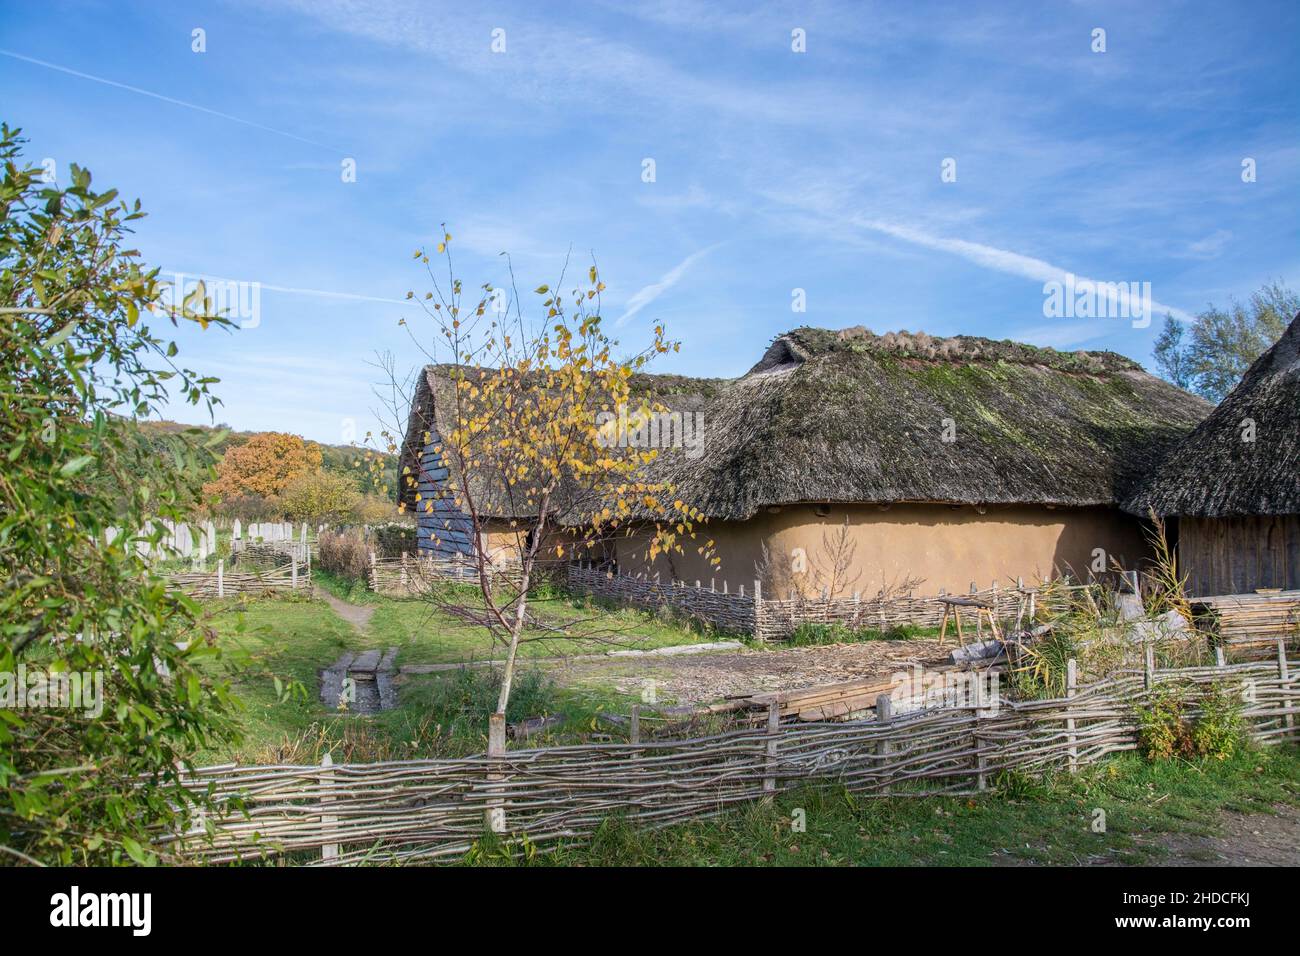 Haithabu war eine bedeutende Siedlung der Wikinger. Der Ort gilt als frühe mittelalterliche Stadt in Nordeuropa und war ein wichtiger Handelsort und H Stock Photo